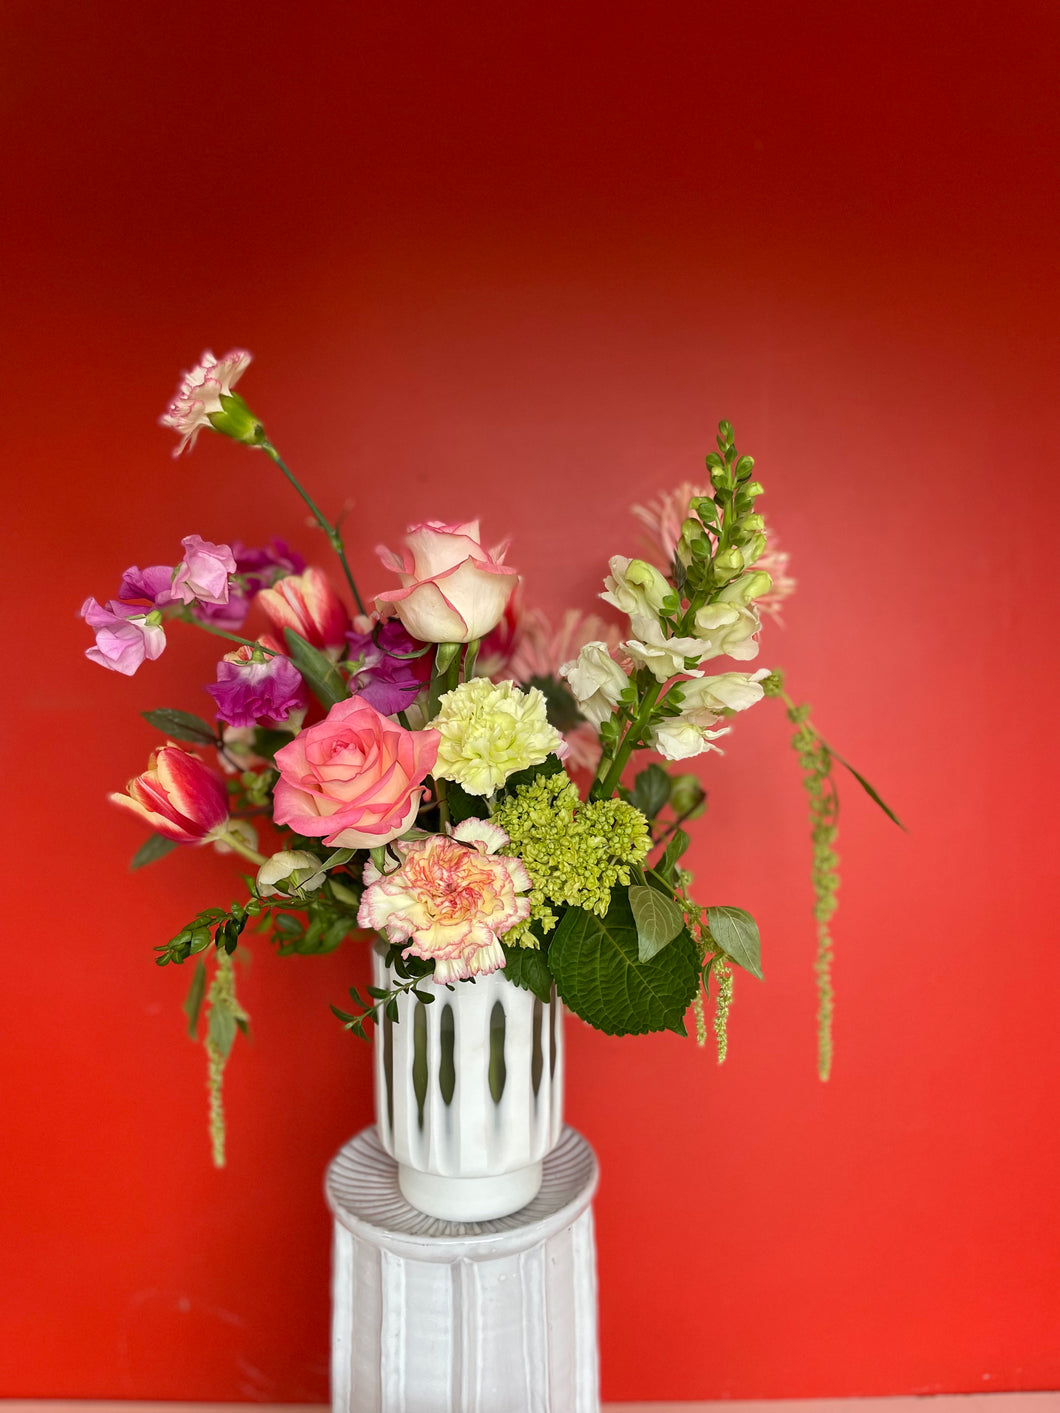 ♥ Valentine's Day ♥ - Designer's Choice Vase Arrangement